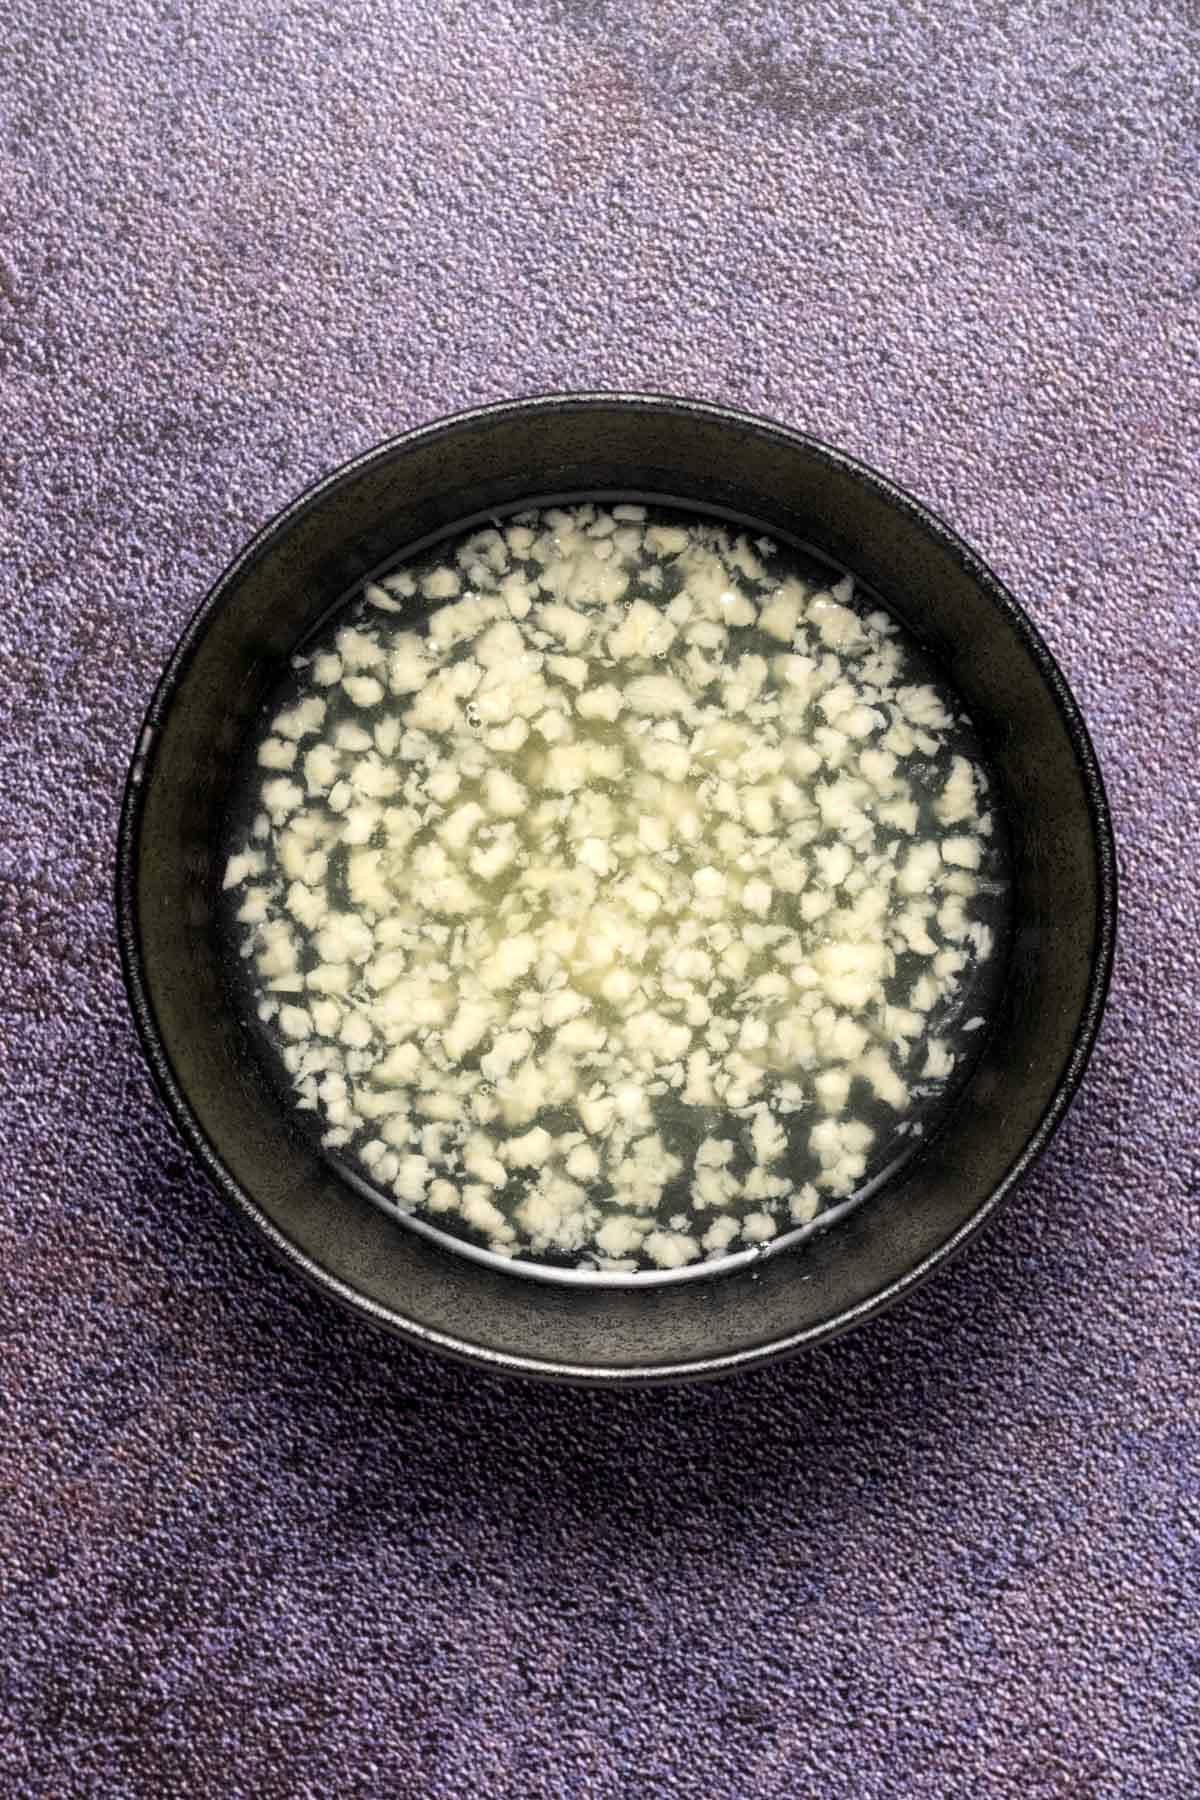 Crushed garlic soaking in fresh lemon juice in a black bowl.